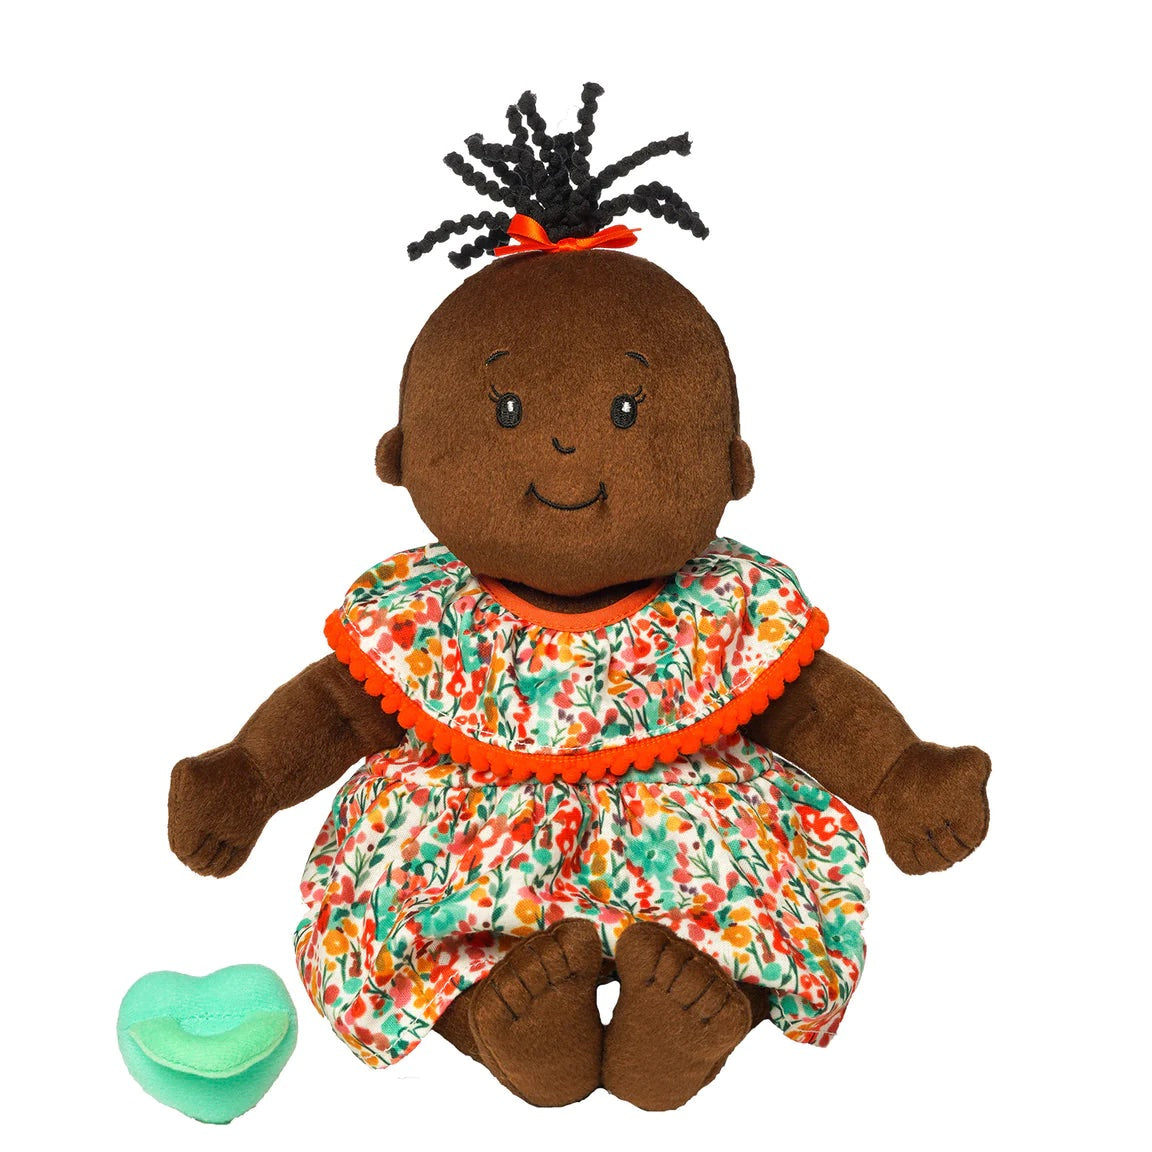 Baby Stella Brown with Wavy Black Tuft by Manhattan Toy #164130